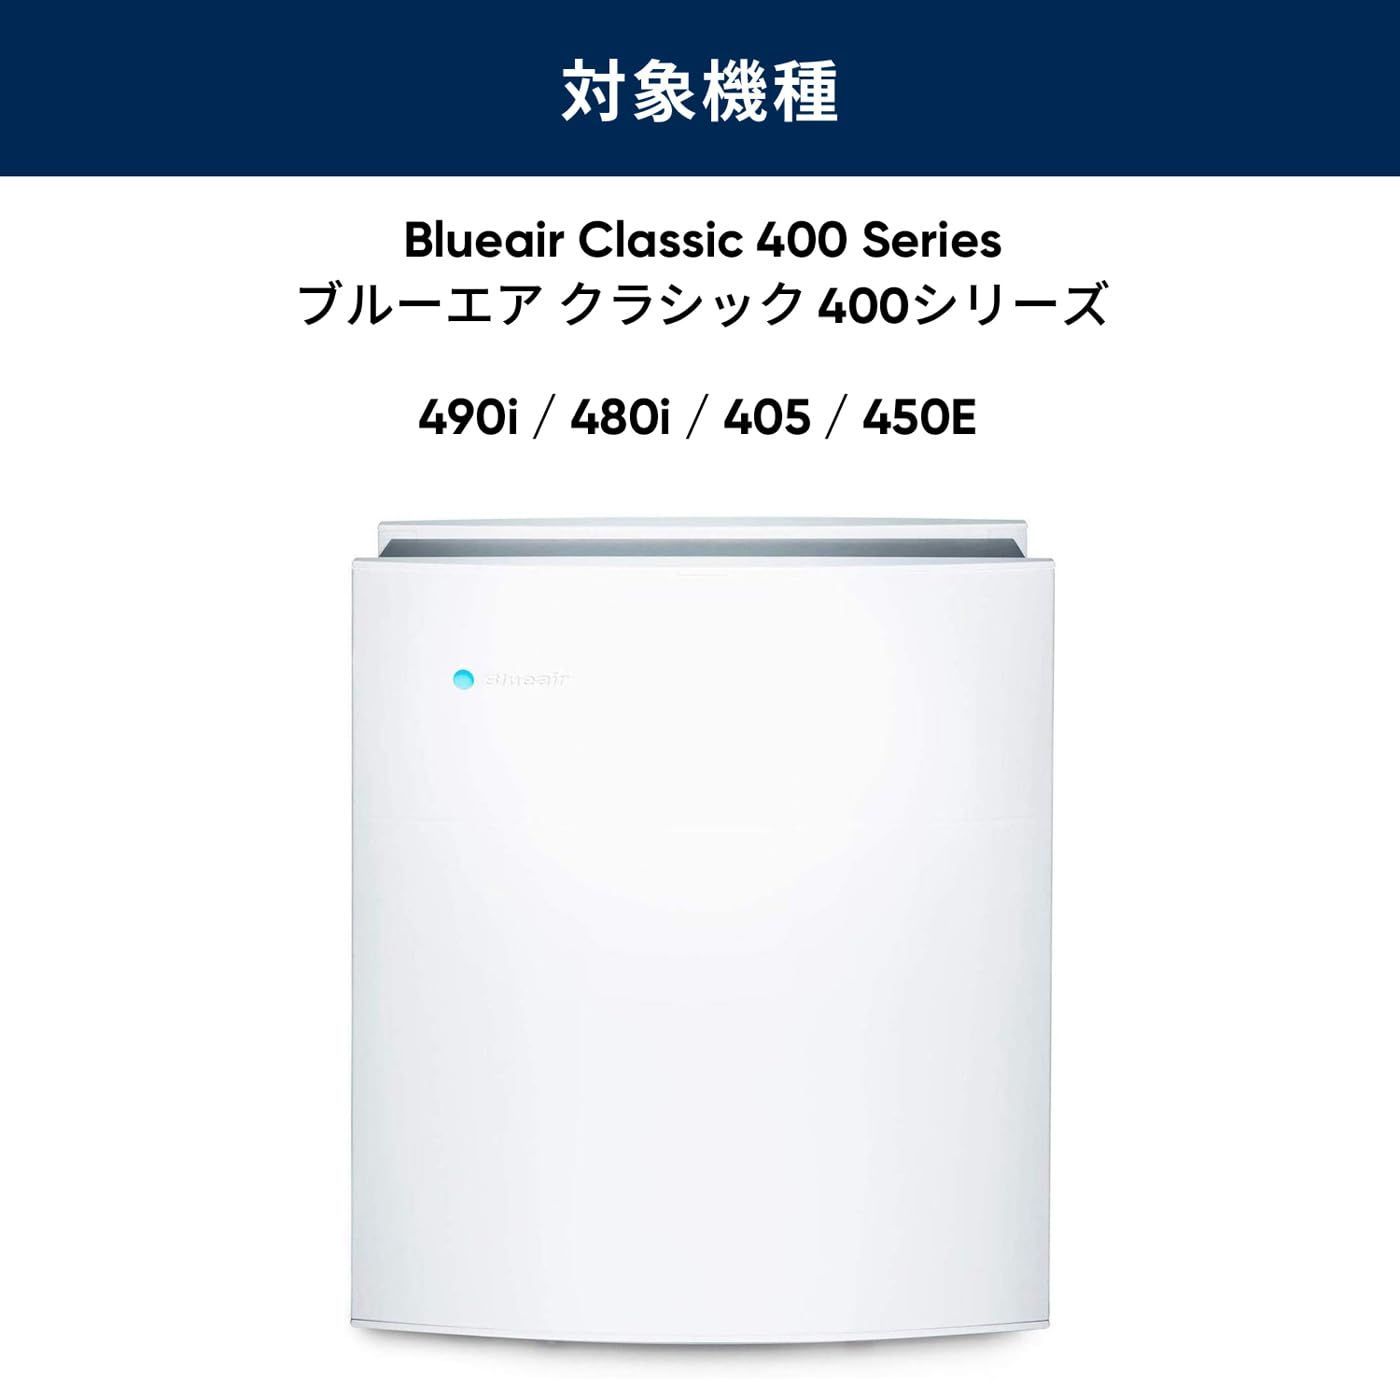 純正品ブルーエア 空気清浄機 Classic 400シリーズ 交換用 ダストフィ ...